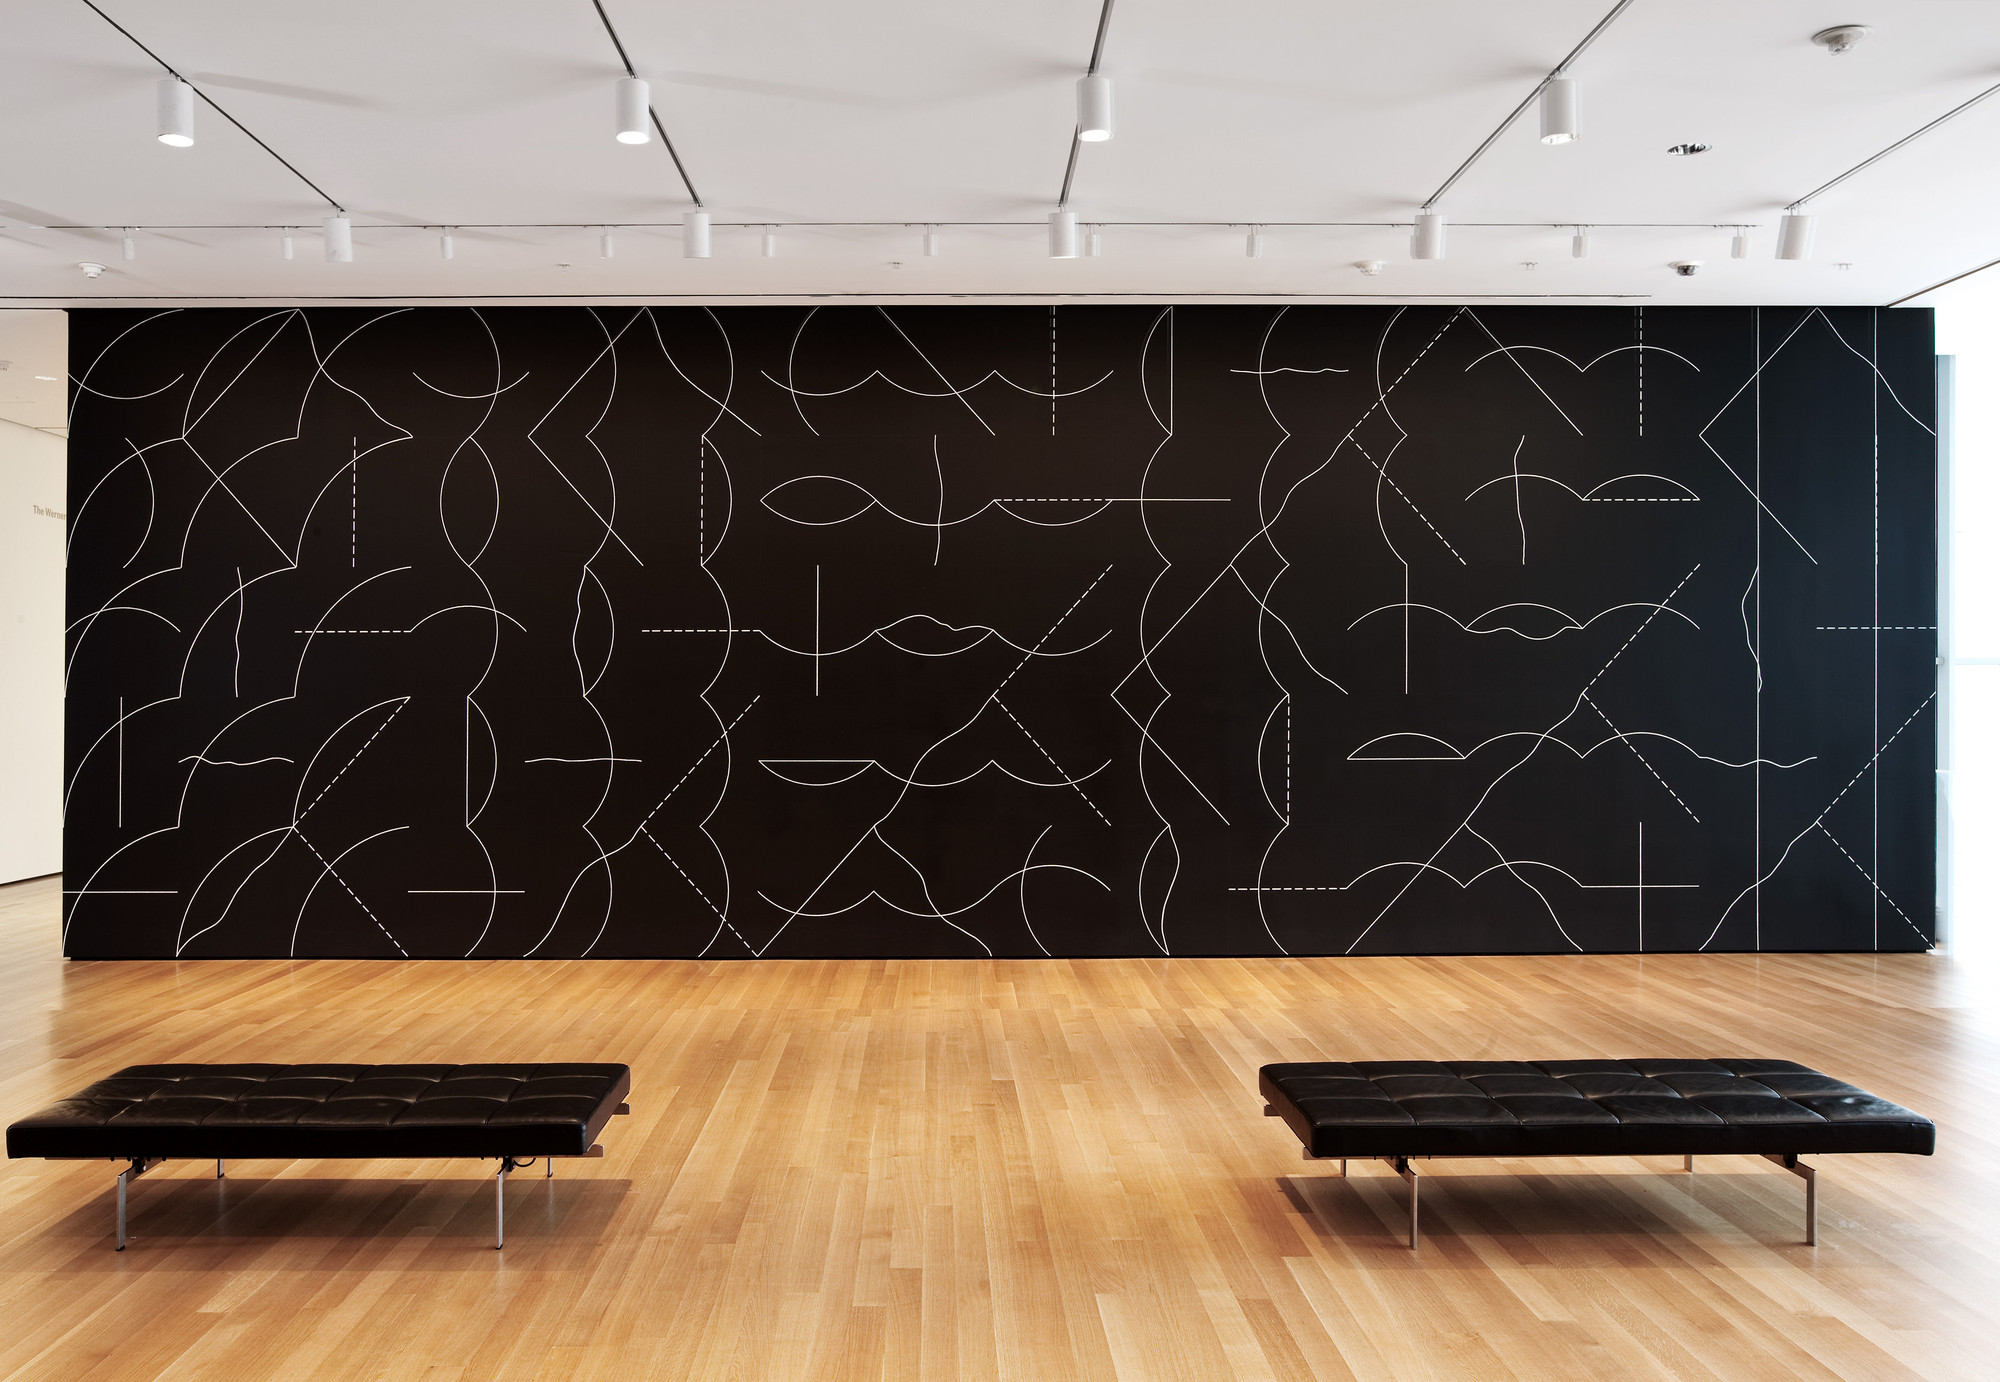 Sol LeWitt: A Wall Drawing Retrospective | MASS MoCA